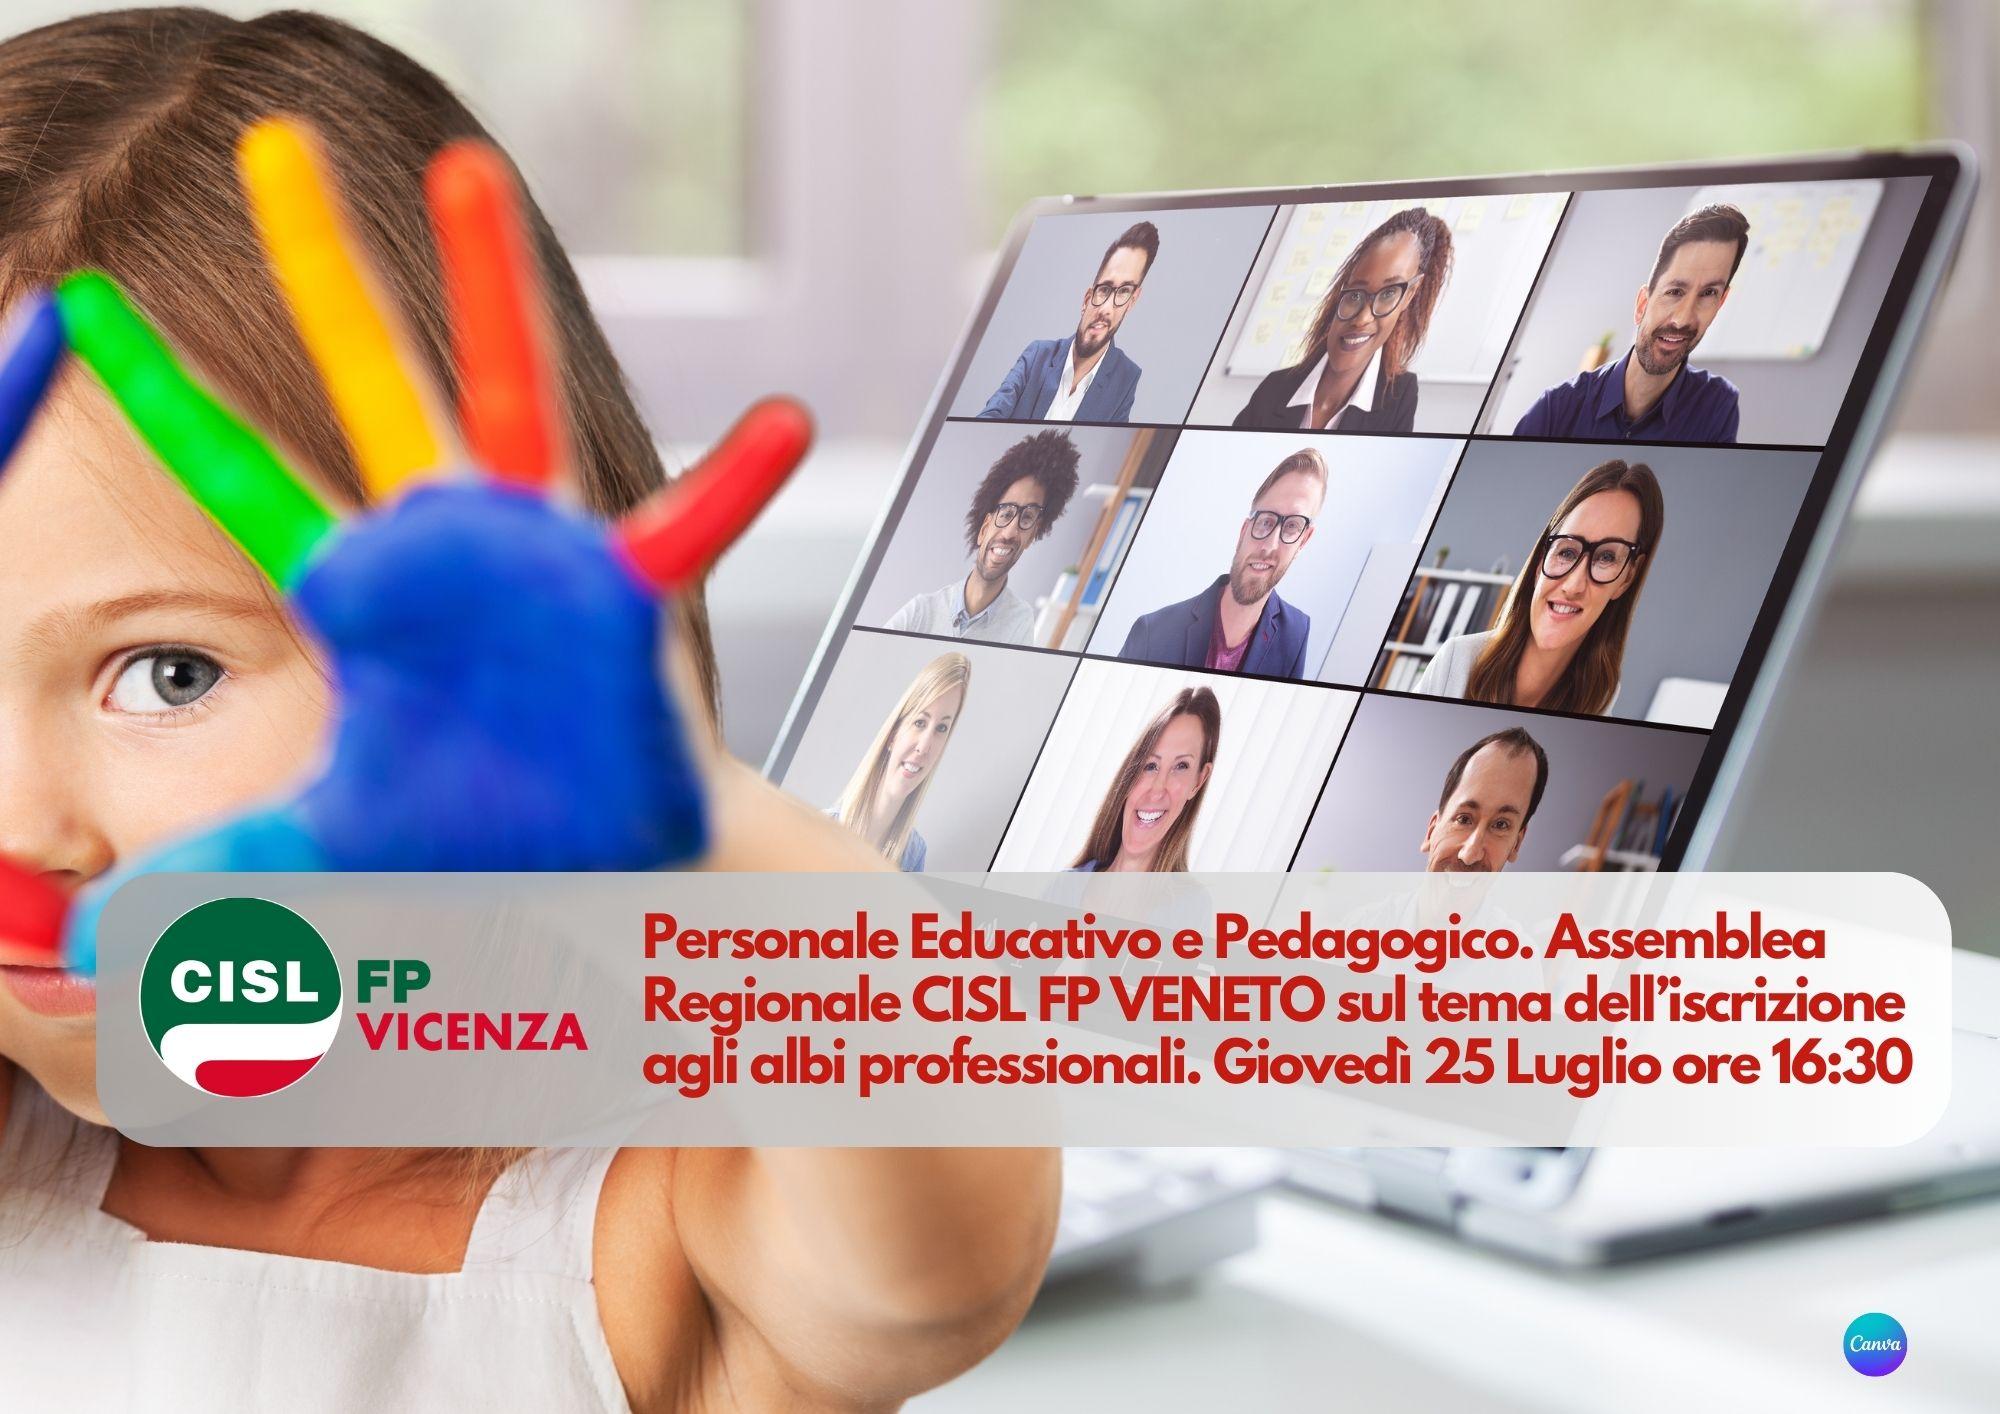 CISL FP Vicenza. Personale educativo e pedagogico: 25 luglio ore 16.30 assemblea regionale sul tema dell'ordinamento